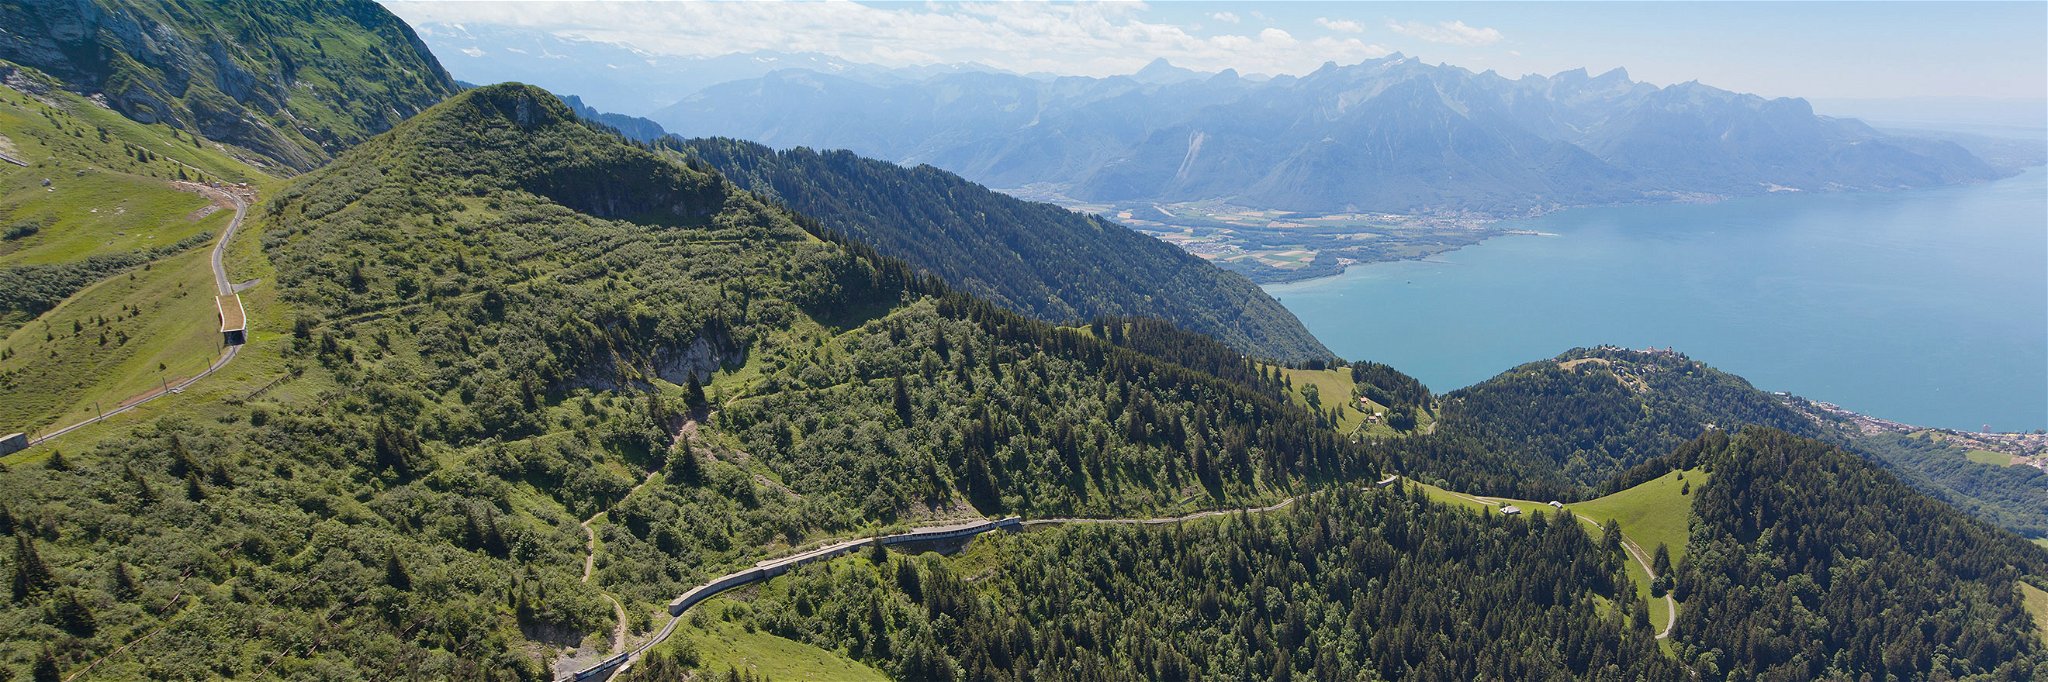 In kurzer Zeit schraubt sich der GoldenPass-Zug in atemberaubende Höhen. Vom Genfersee aus geht es in hübsche Bergdörfer.